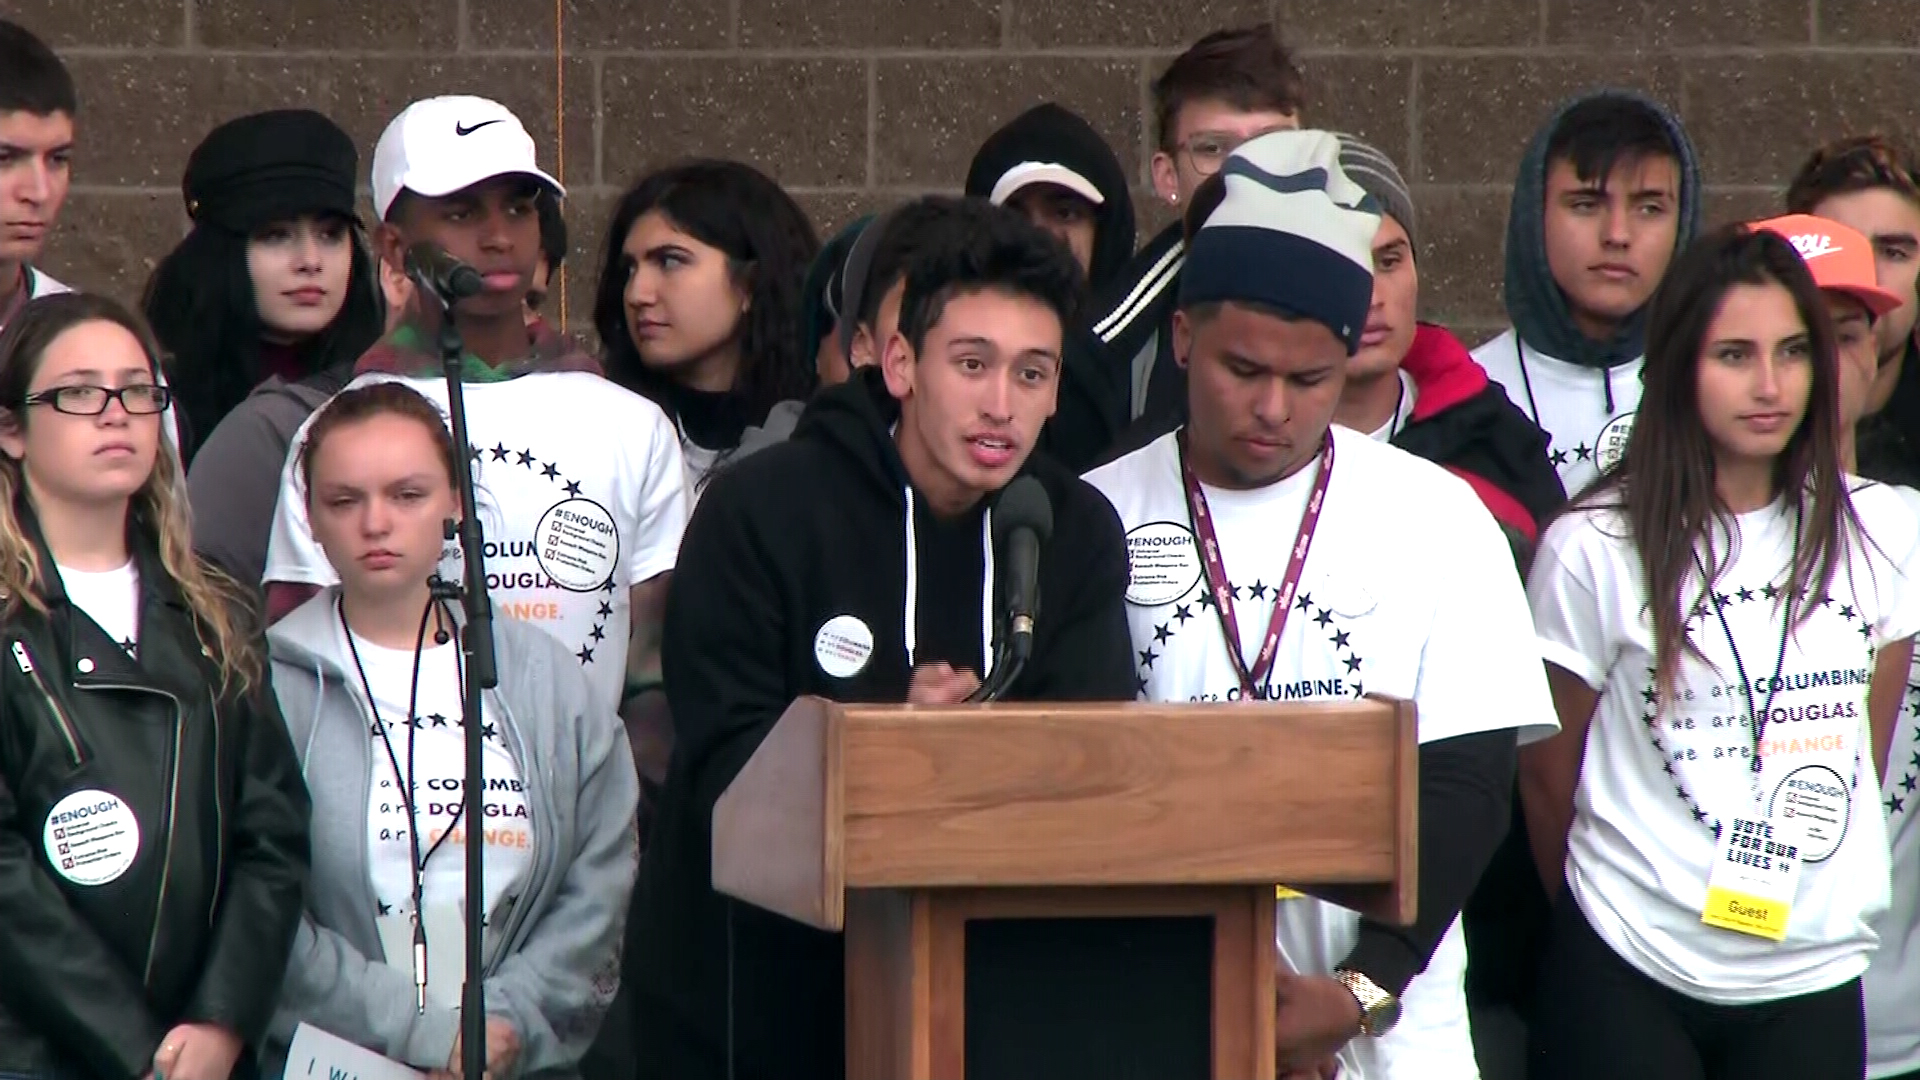 Columbine, Parkland students unite for walkout - CNN Video